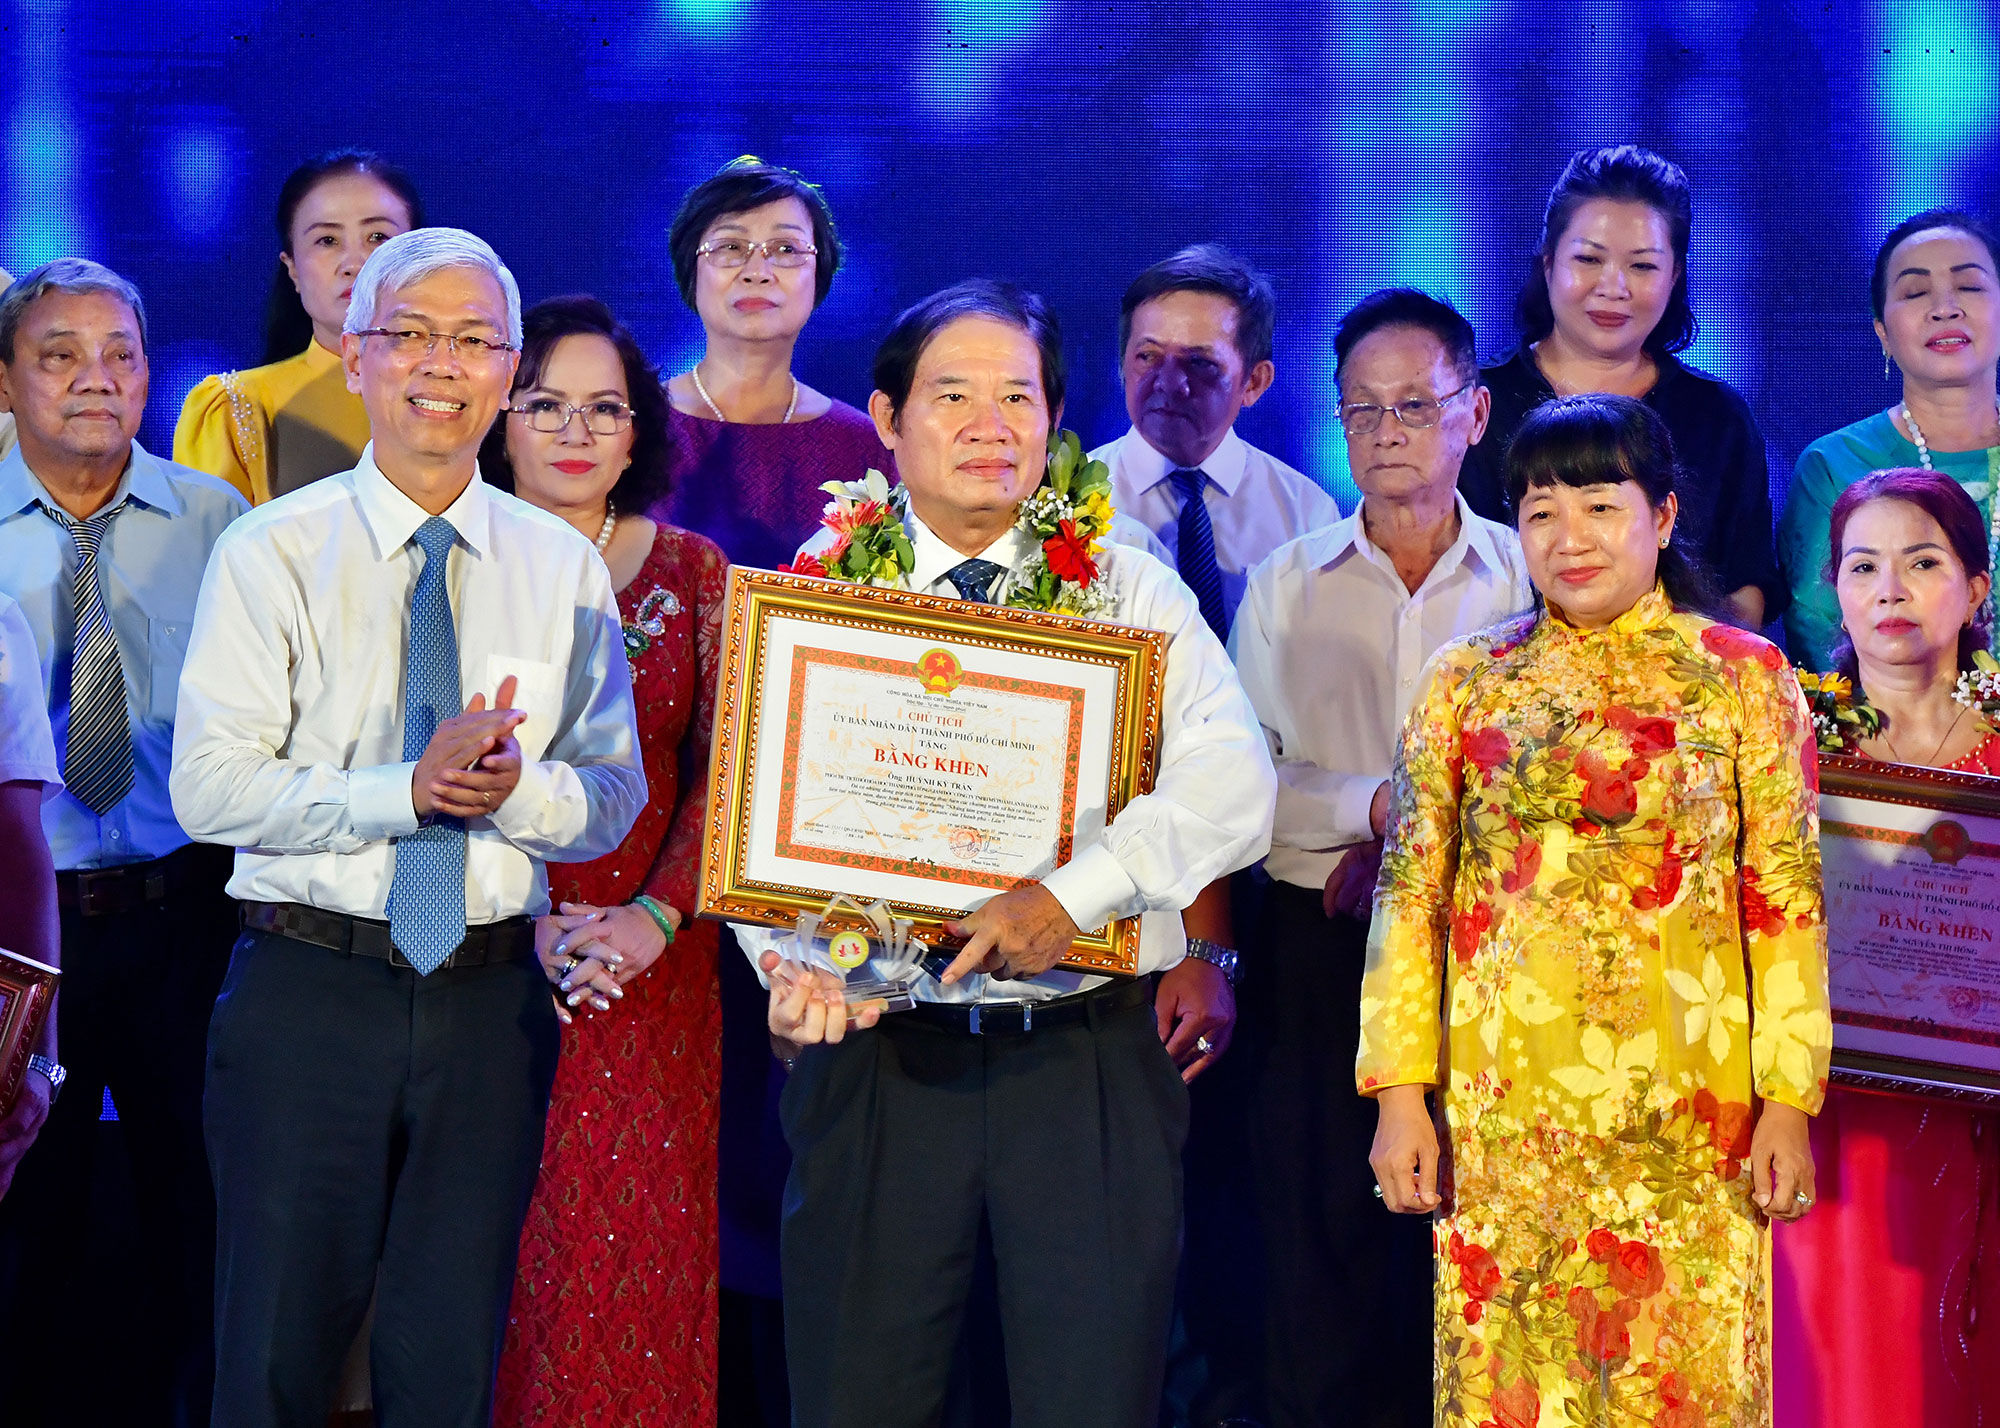 Đồng chí Võ Văn Hoan - Phó Chủ tịch UBND TP. Hồ Chí Minh trao bằng khen cho các cá nhân được tuyên dương (Ảnh: VIỆT DŨNG).